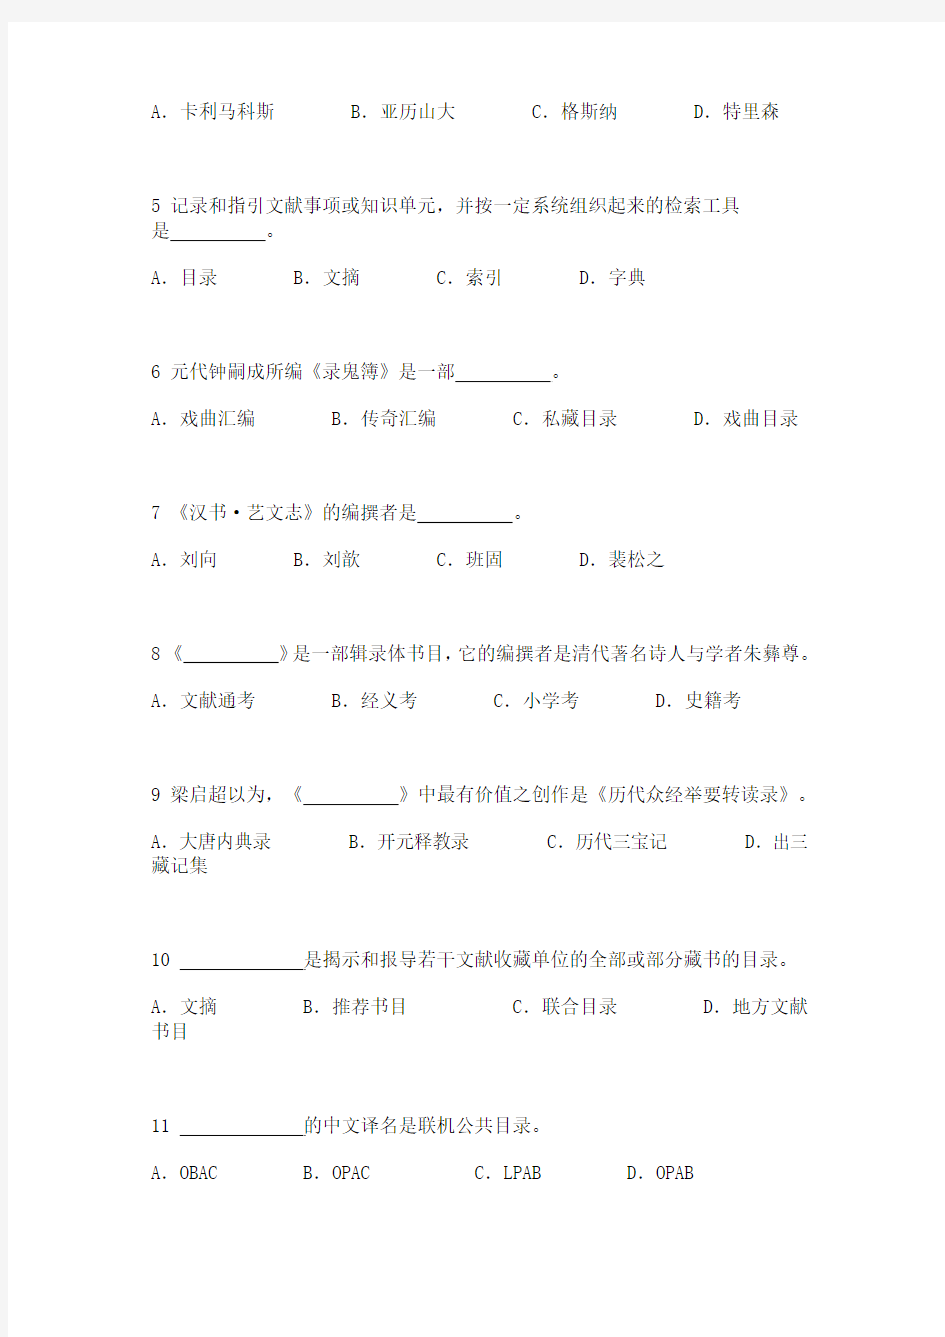 武汉大学信息管理学院《目录学》考试试卷(模拟1)